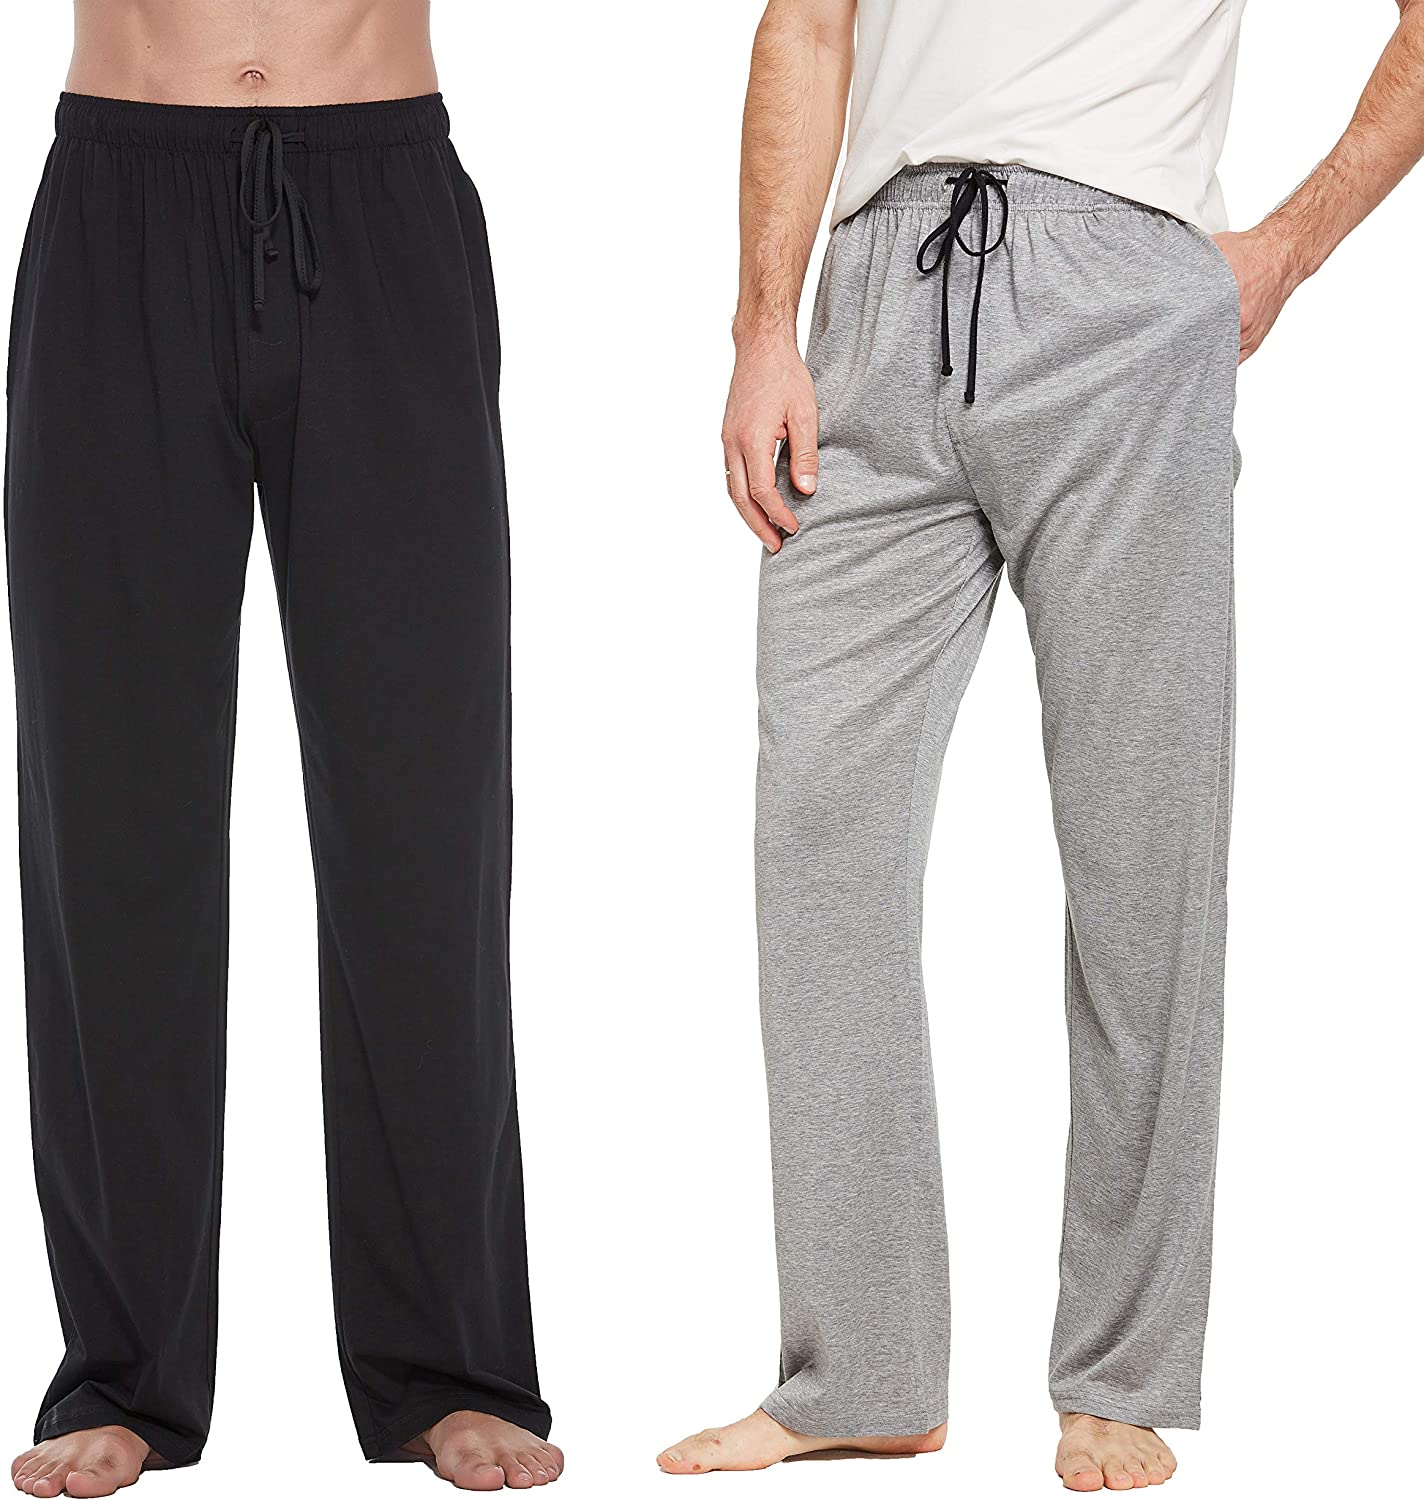 CYZ Men's 100% Cotton Jersey Knit Pajama Pants/Lounge Pants, Grey